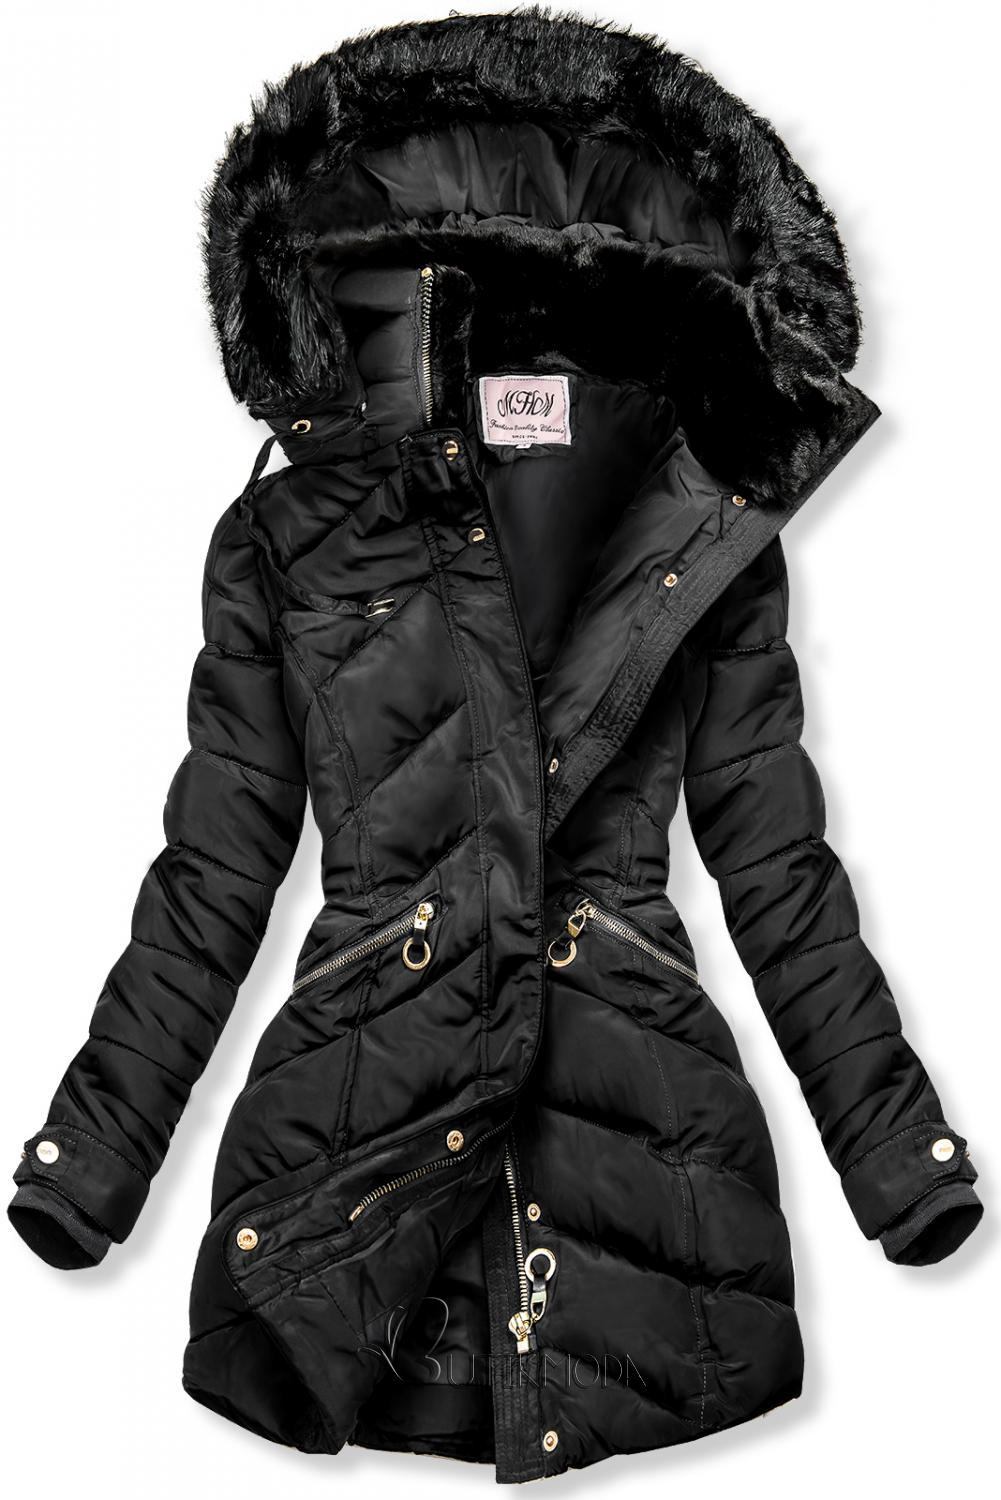 Fekete színű téli kabát, meleg plüss gallérral